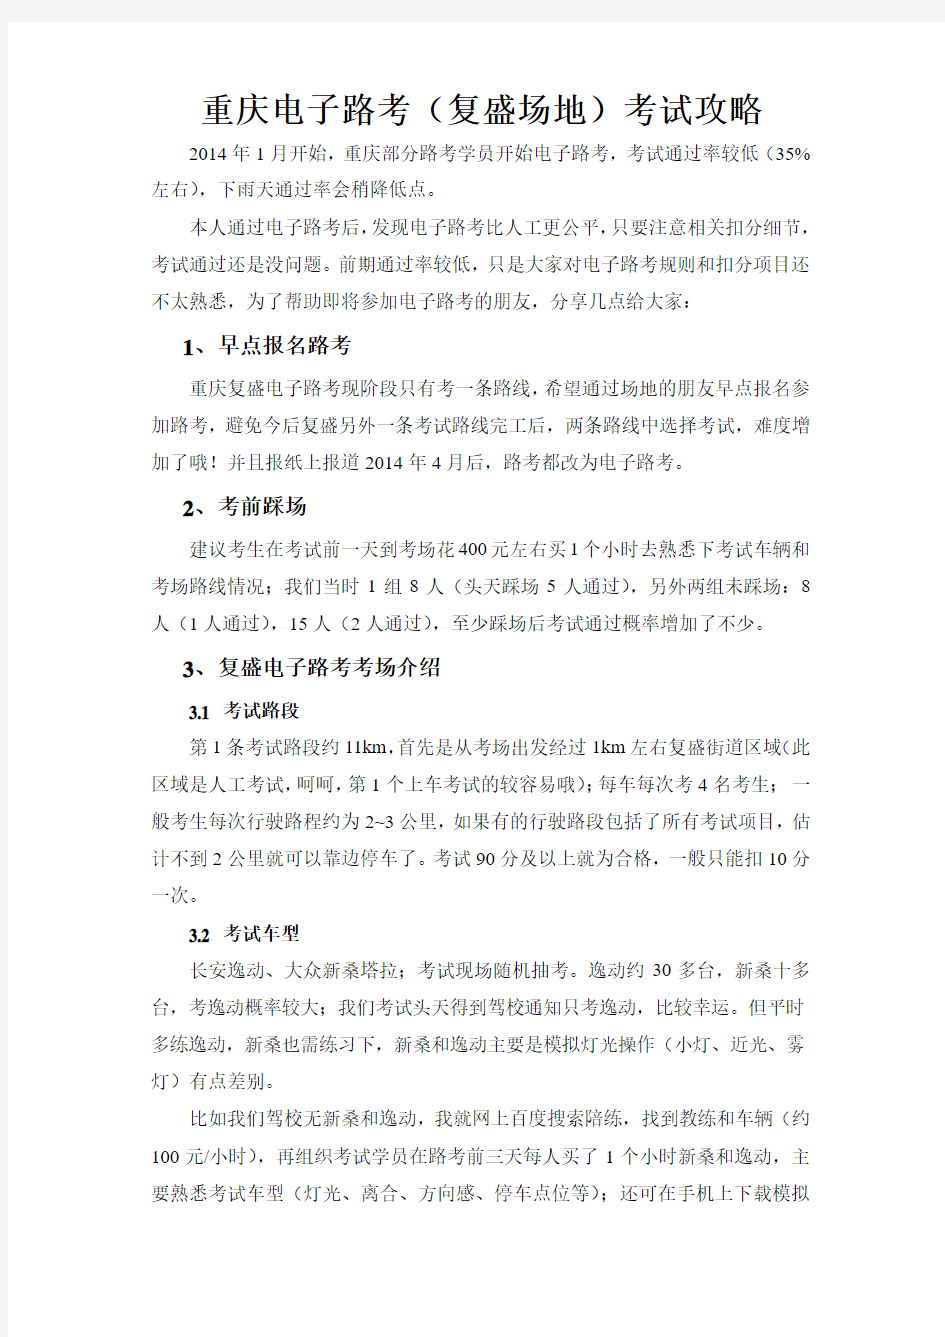 重庆电子路考(复盛场地)考试攻略20140113